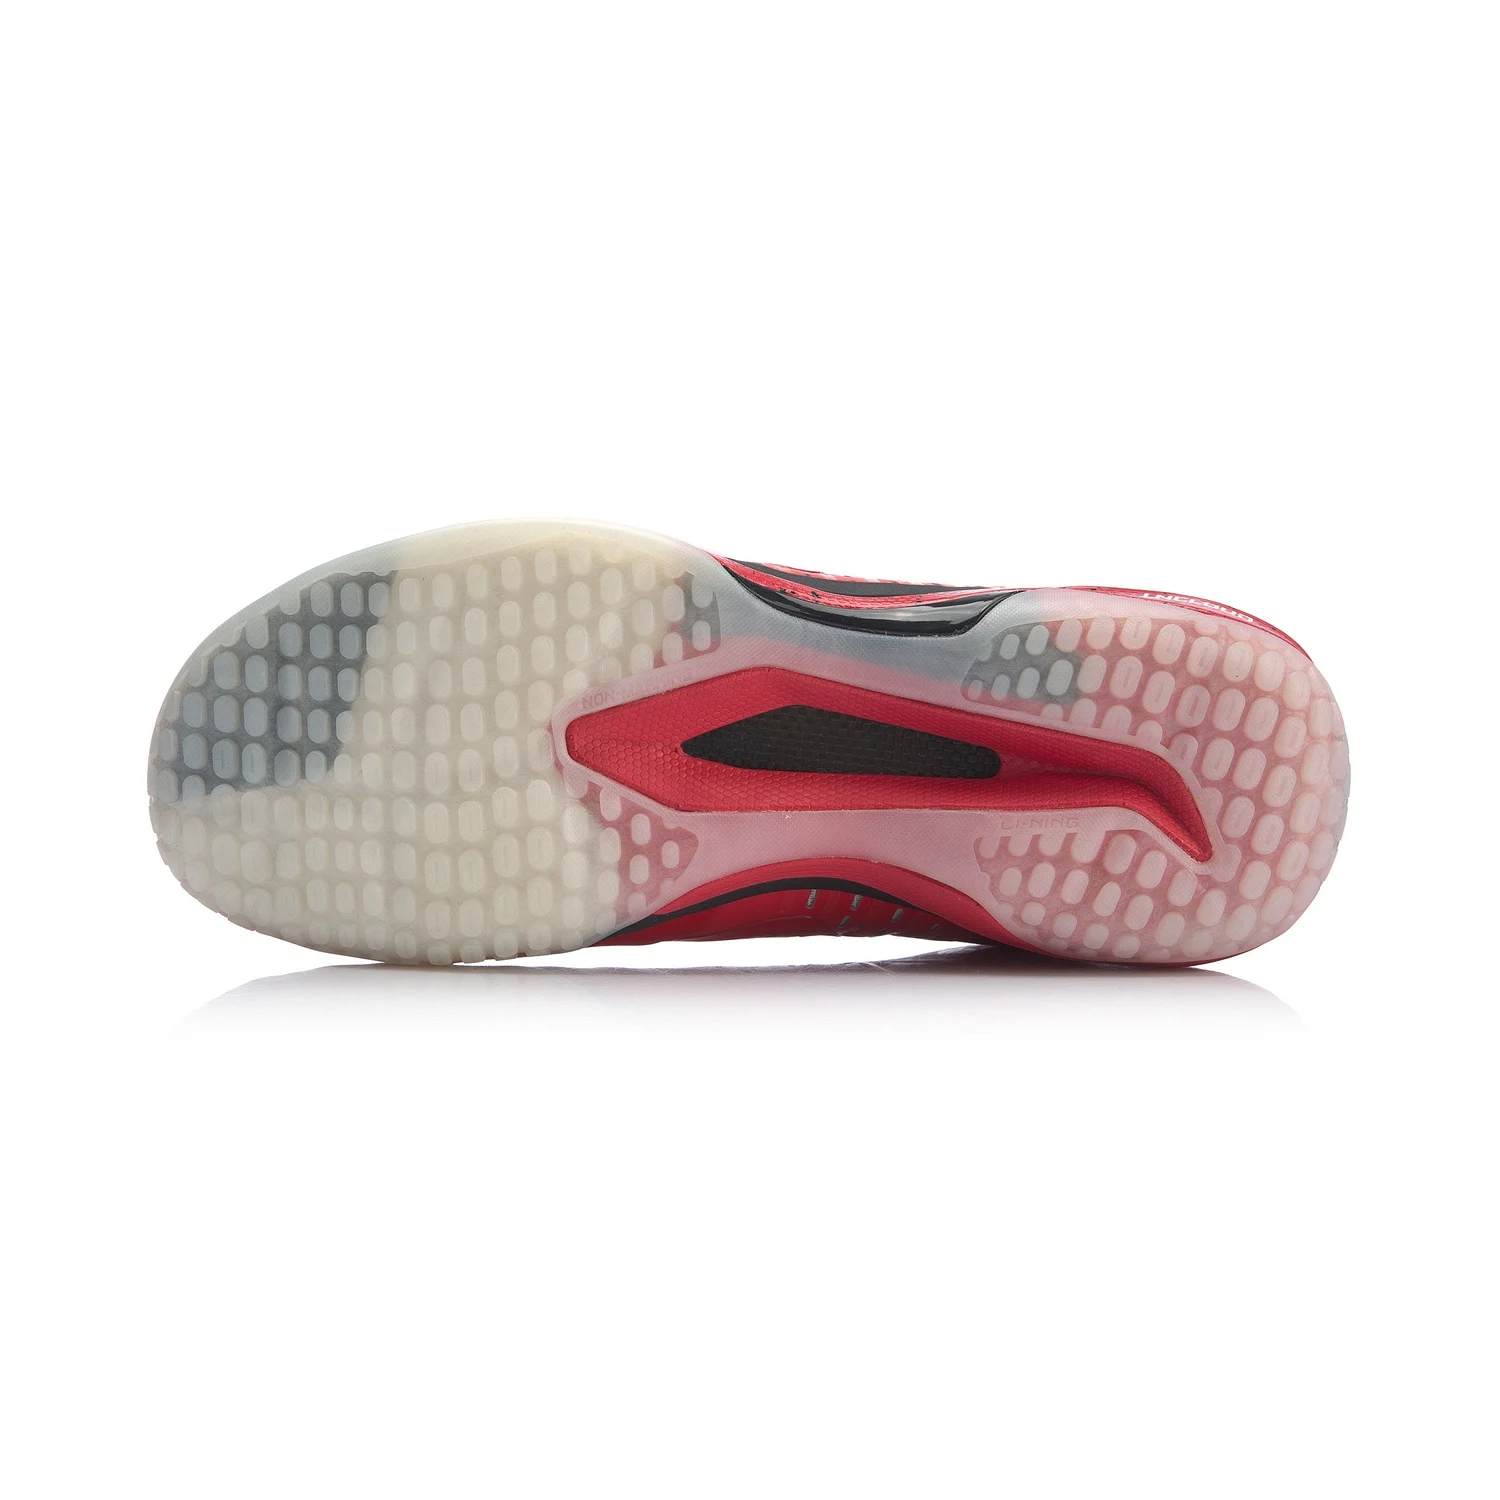 Li-Ning/мужские кроссовки SHADOW OF BLADE 4,0, профессиональная обувь для соревнований по бадминтону, подкладка, облачная Легкая спортивная обувь, кроссовки AYAP019 XYY147